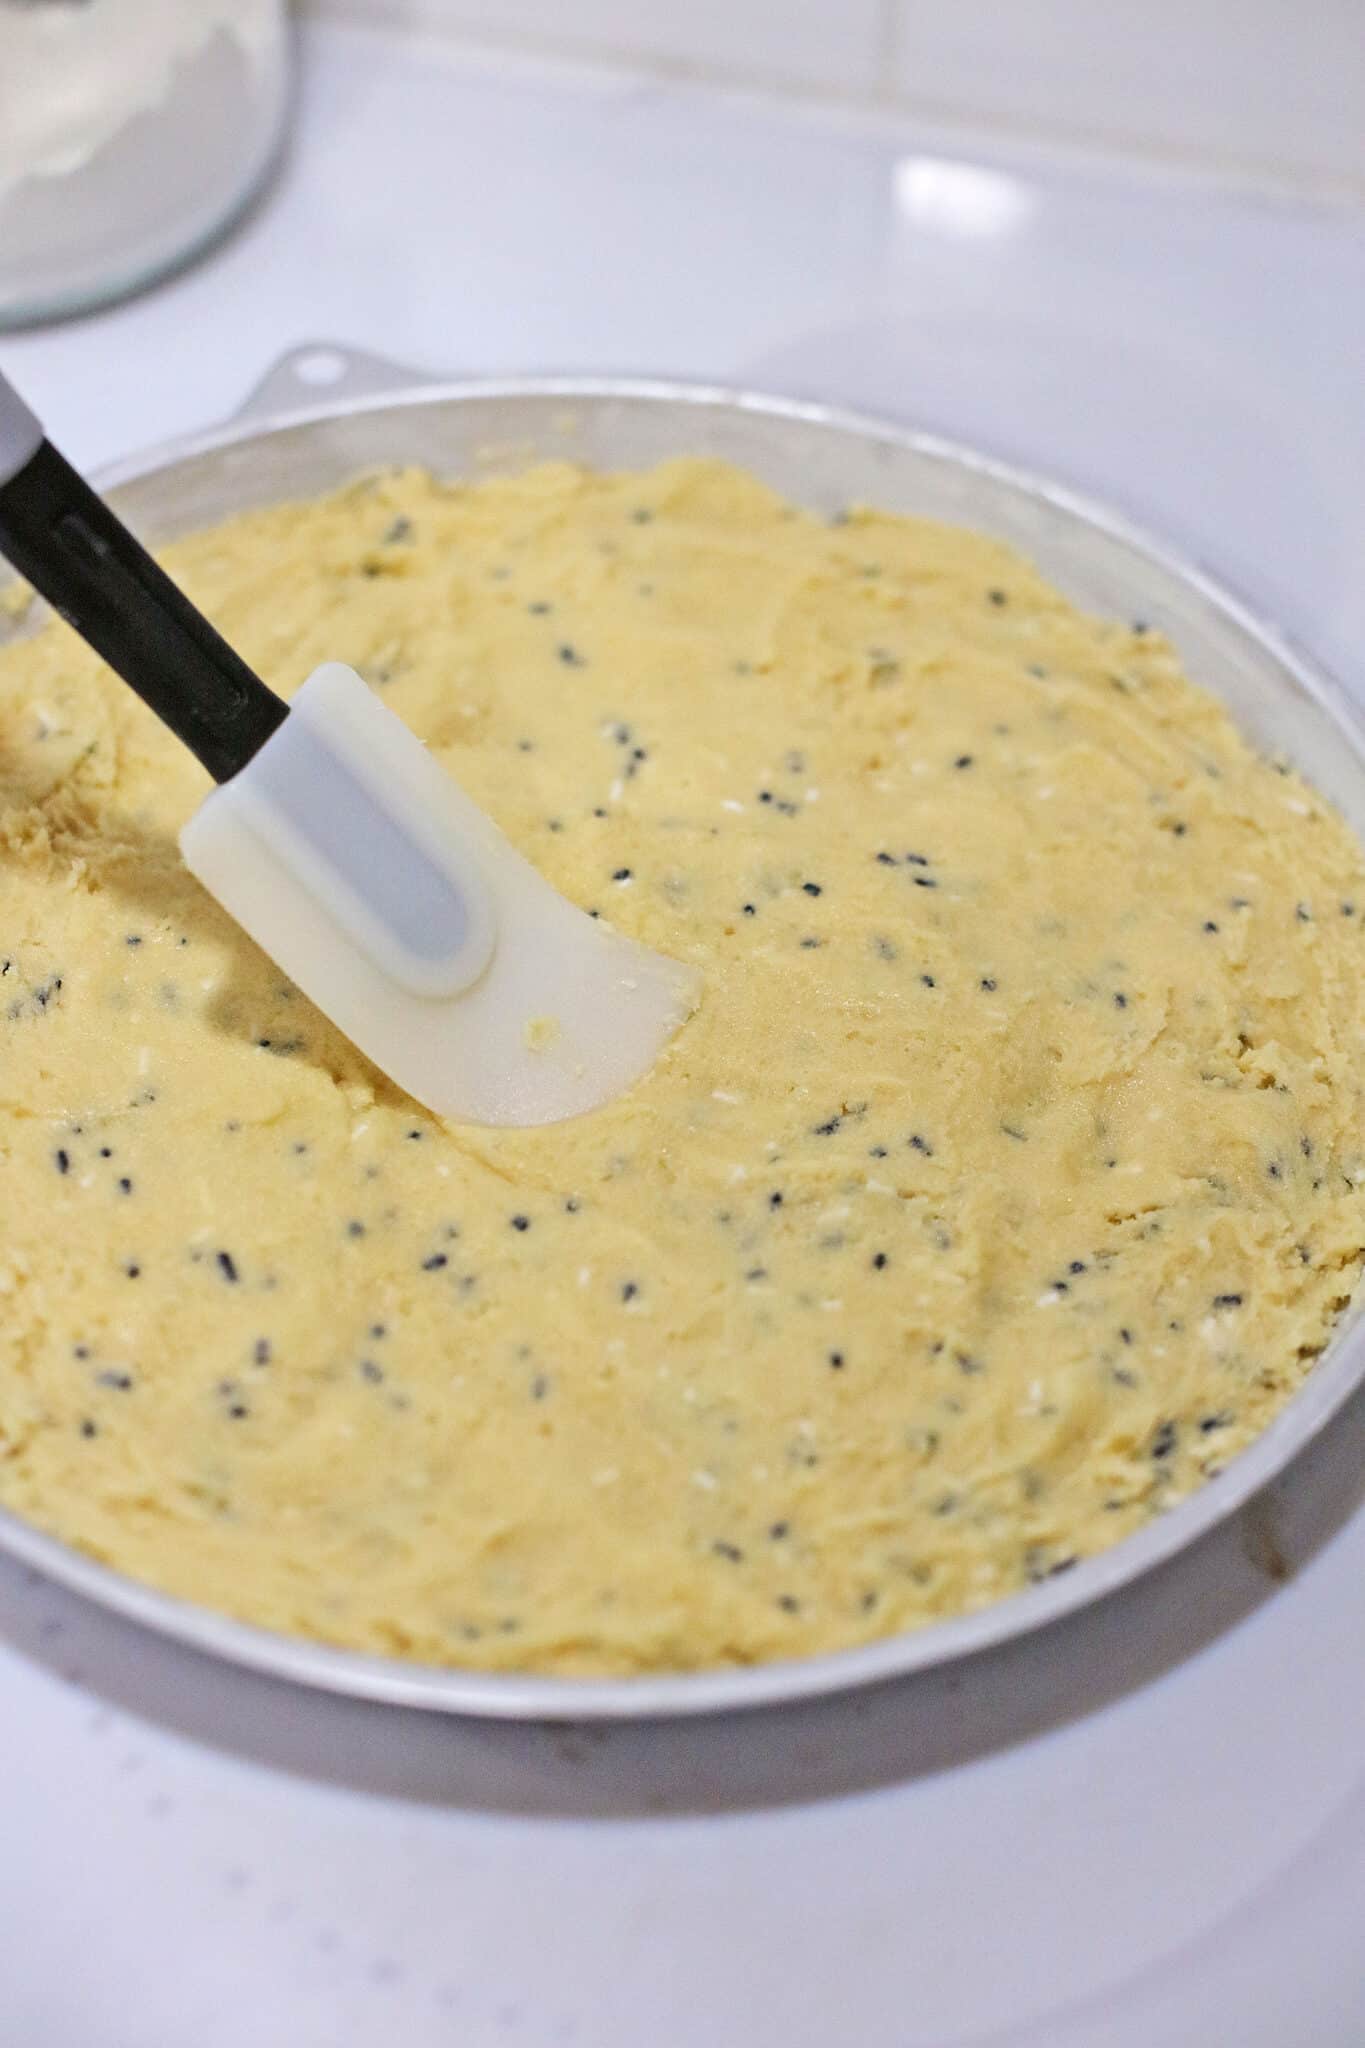 Adding the dough into the pan.